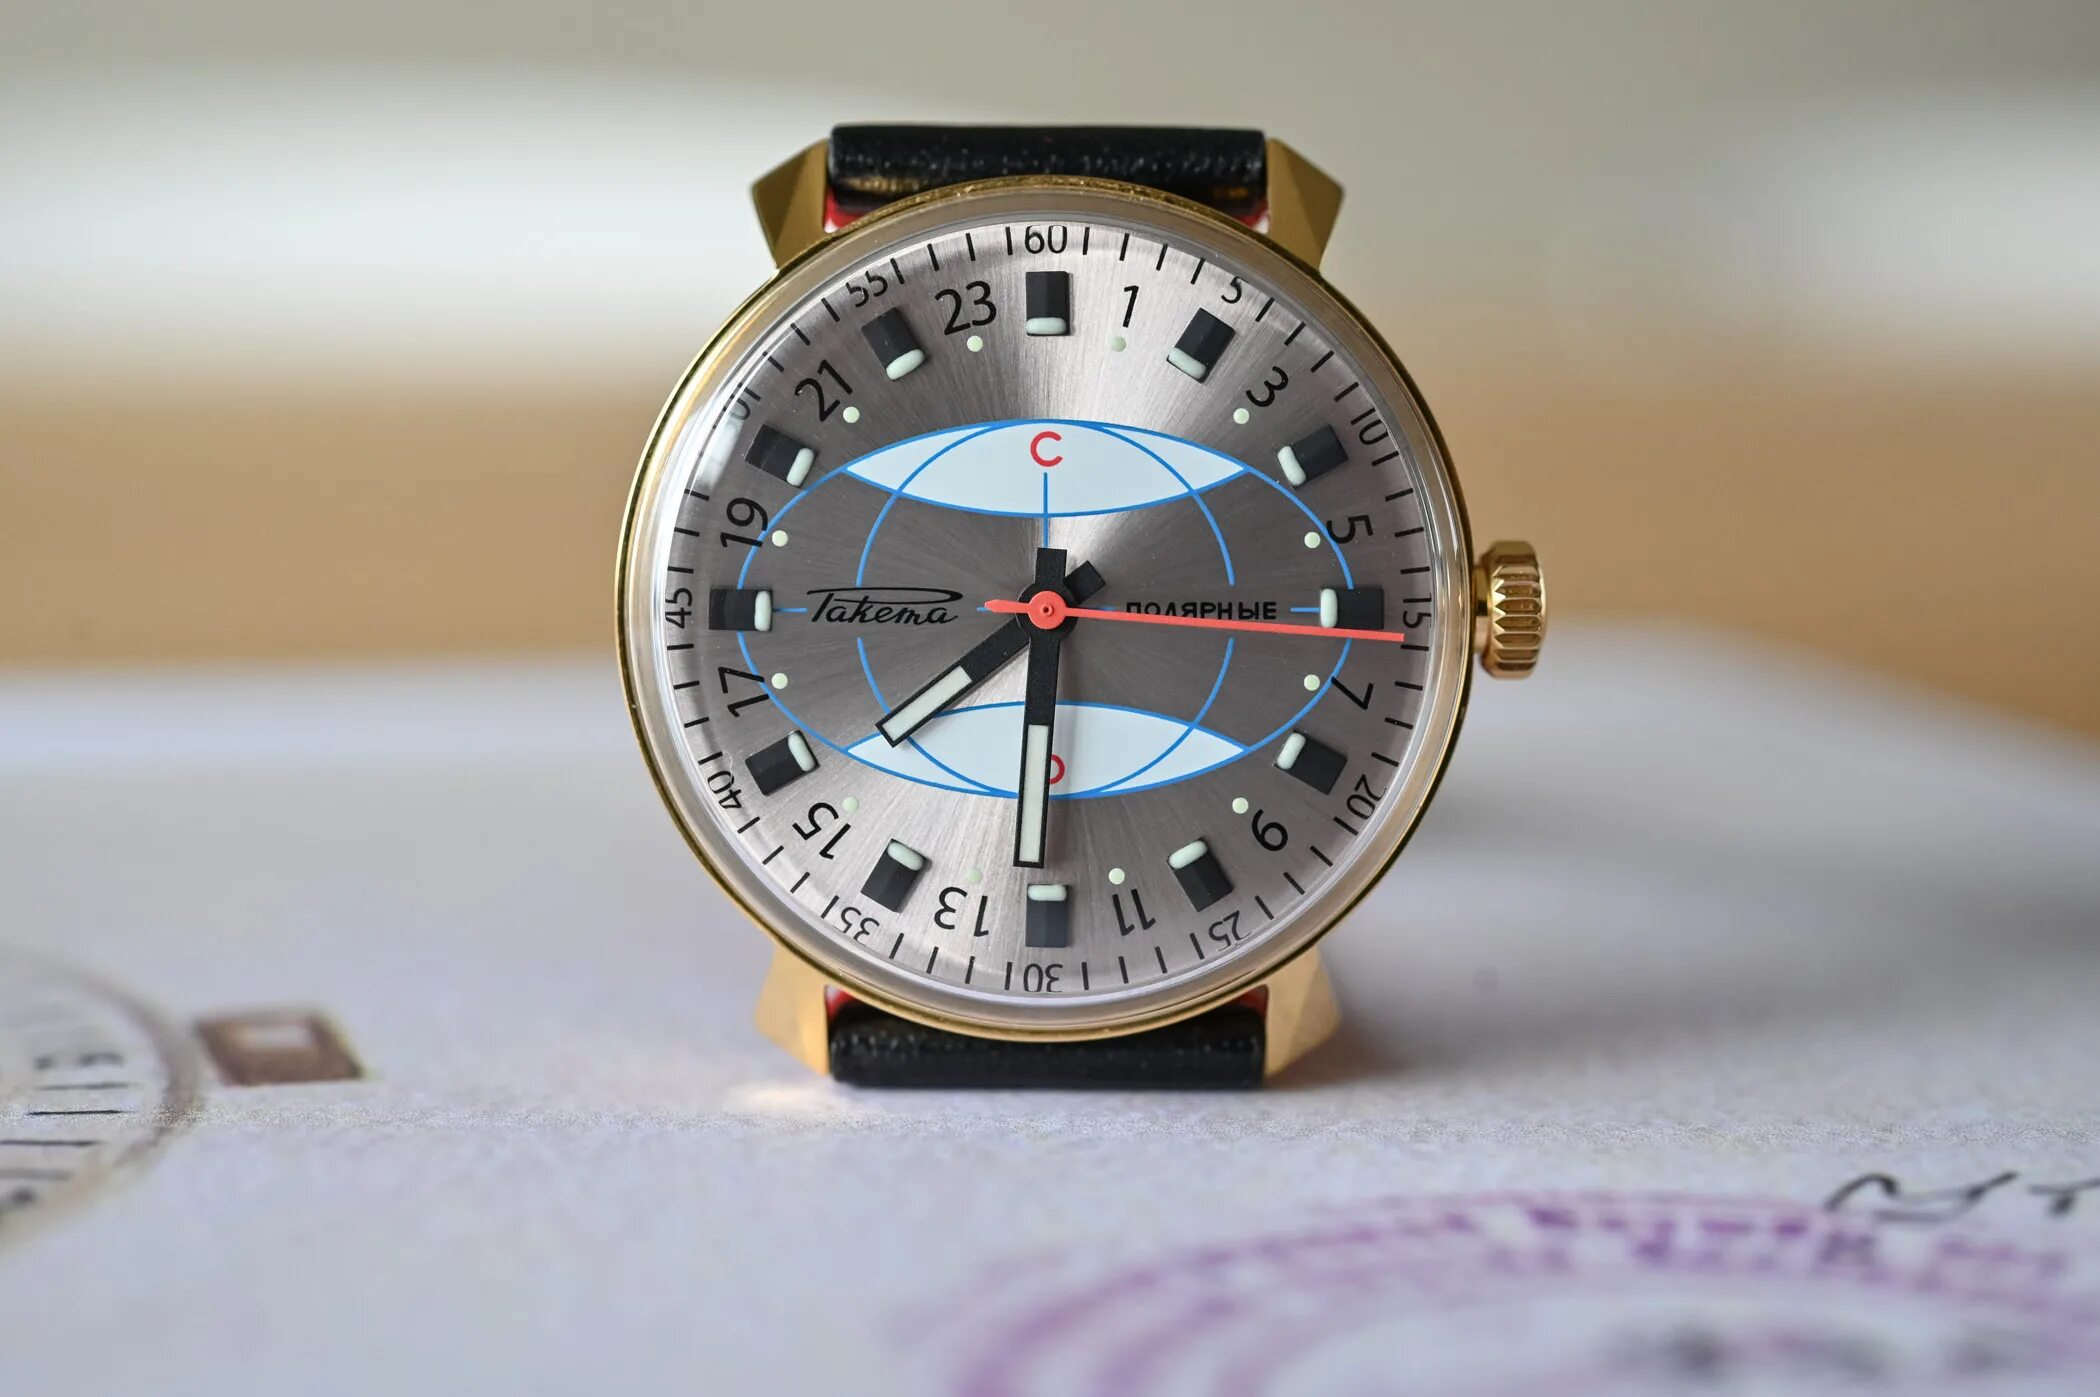 Часы ракета Арктика. Часы ракета Полярные 24 часа. Часы ракета 401573. Часы ракета Полярные. Часы ракета россия